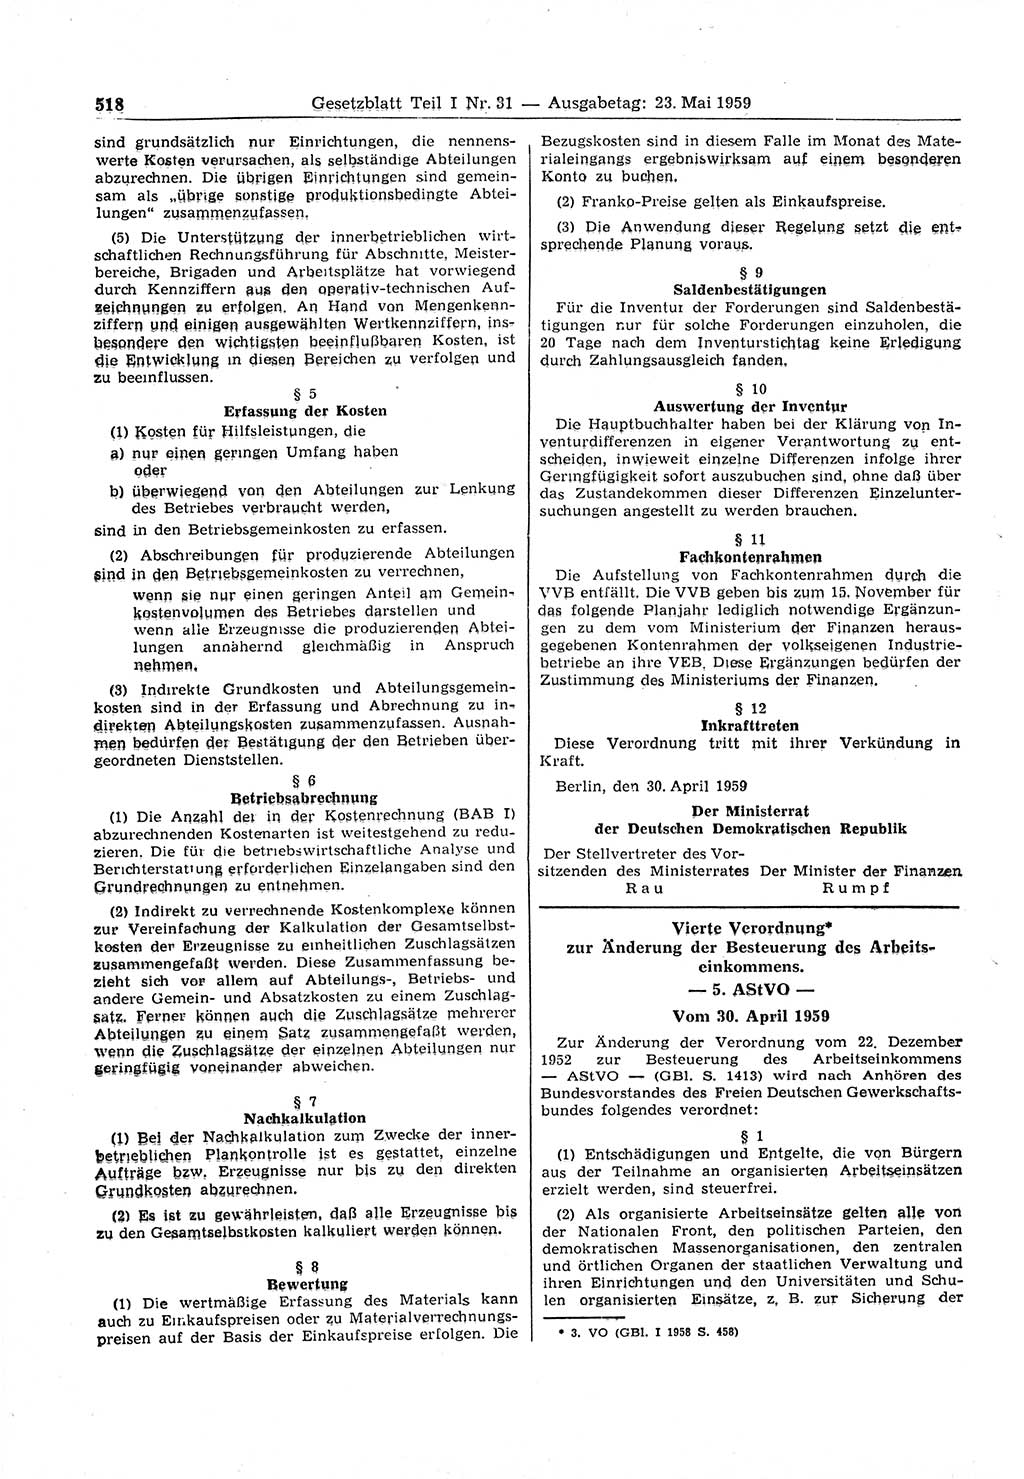 Gesetzblatt (GBl.) der Deutschen Demokratischen Republik (DDR) Teil Ⅰ 1959, Seite 518 (GBl. DDR Ⅰ 1959, S. 518)